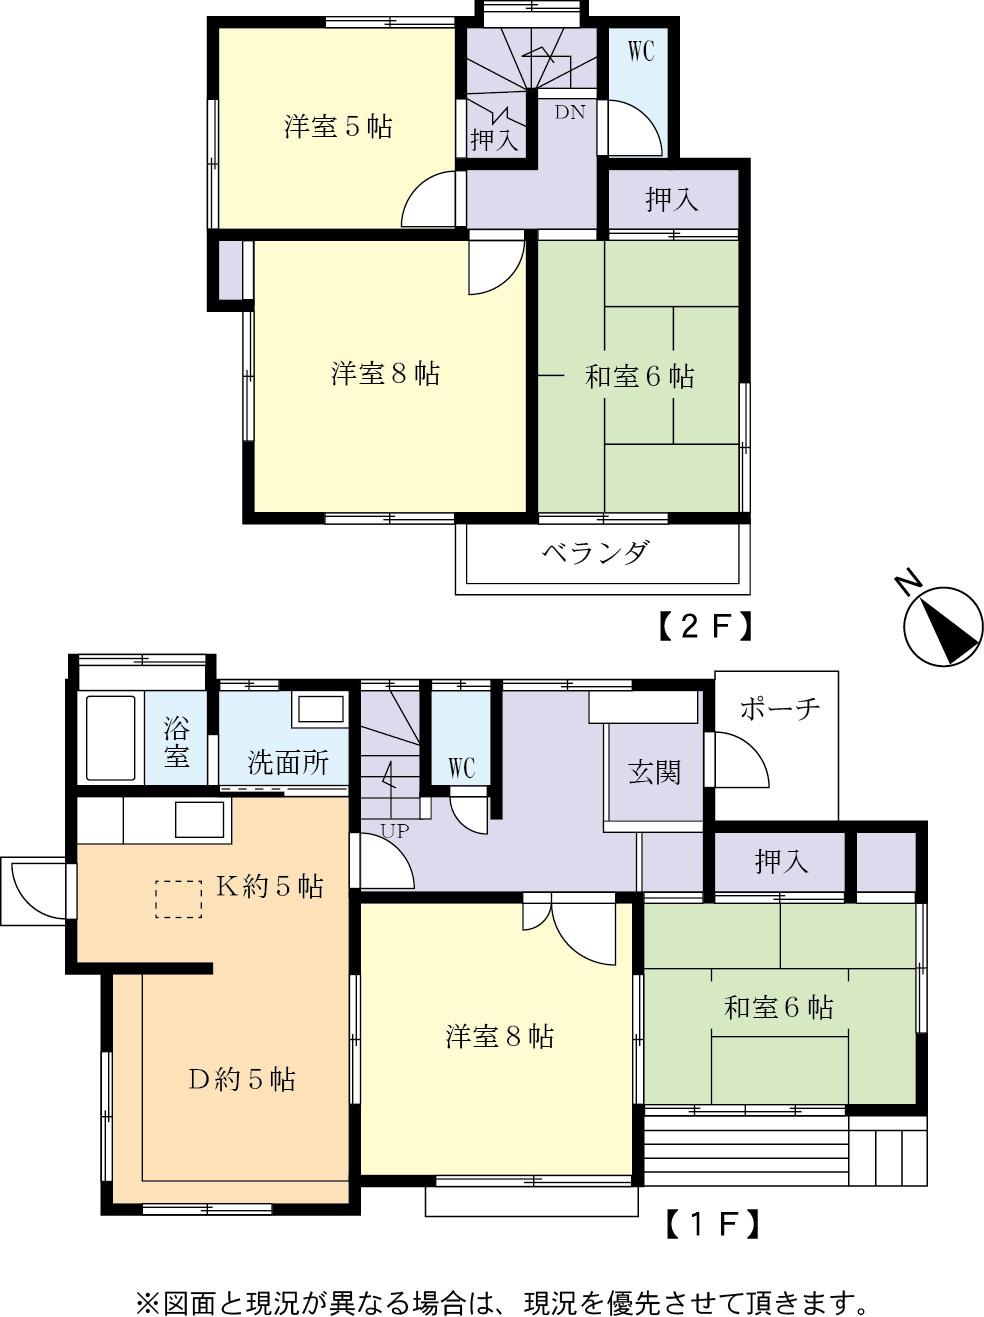 Floor plan. 7.8 million yen, 5DK, Land area 157.98 sq m , Building area 112.6 sq m